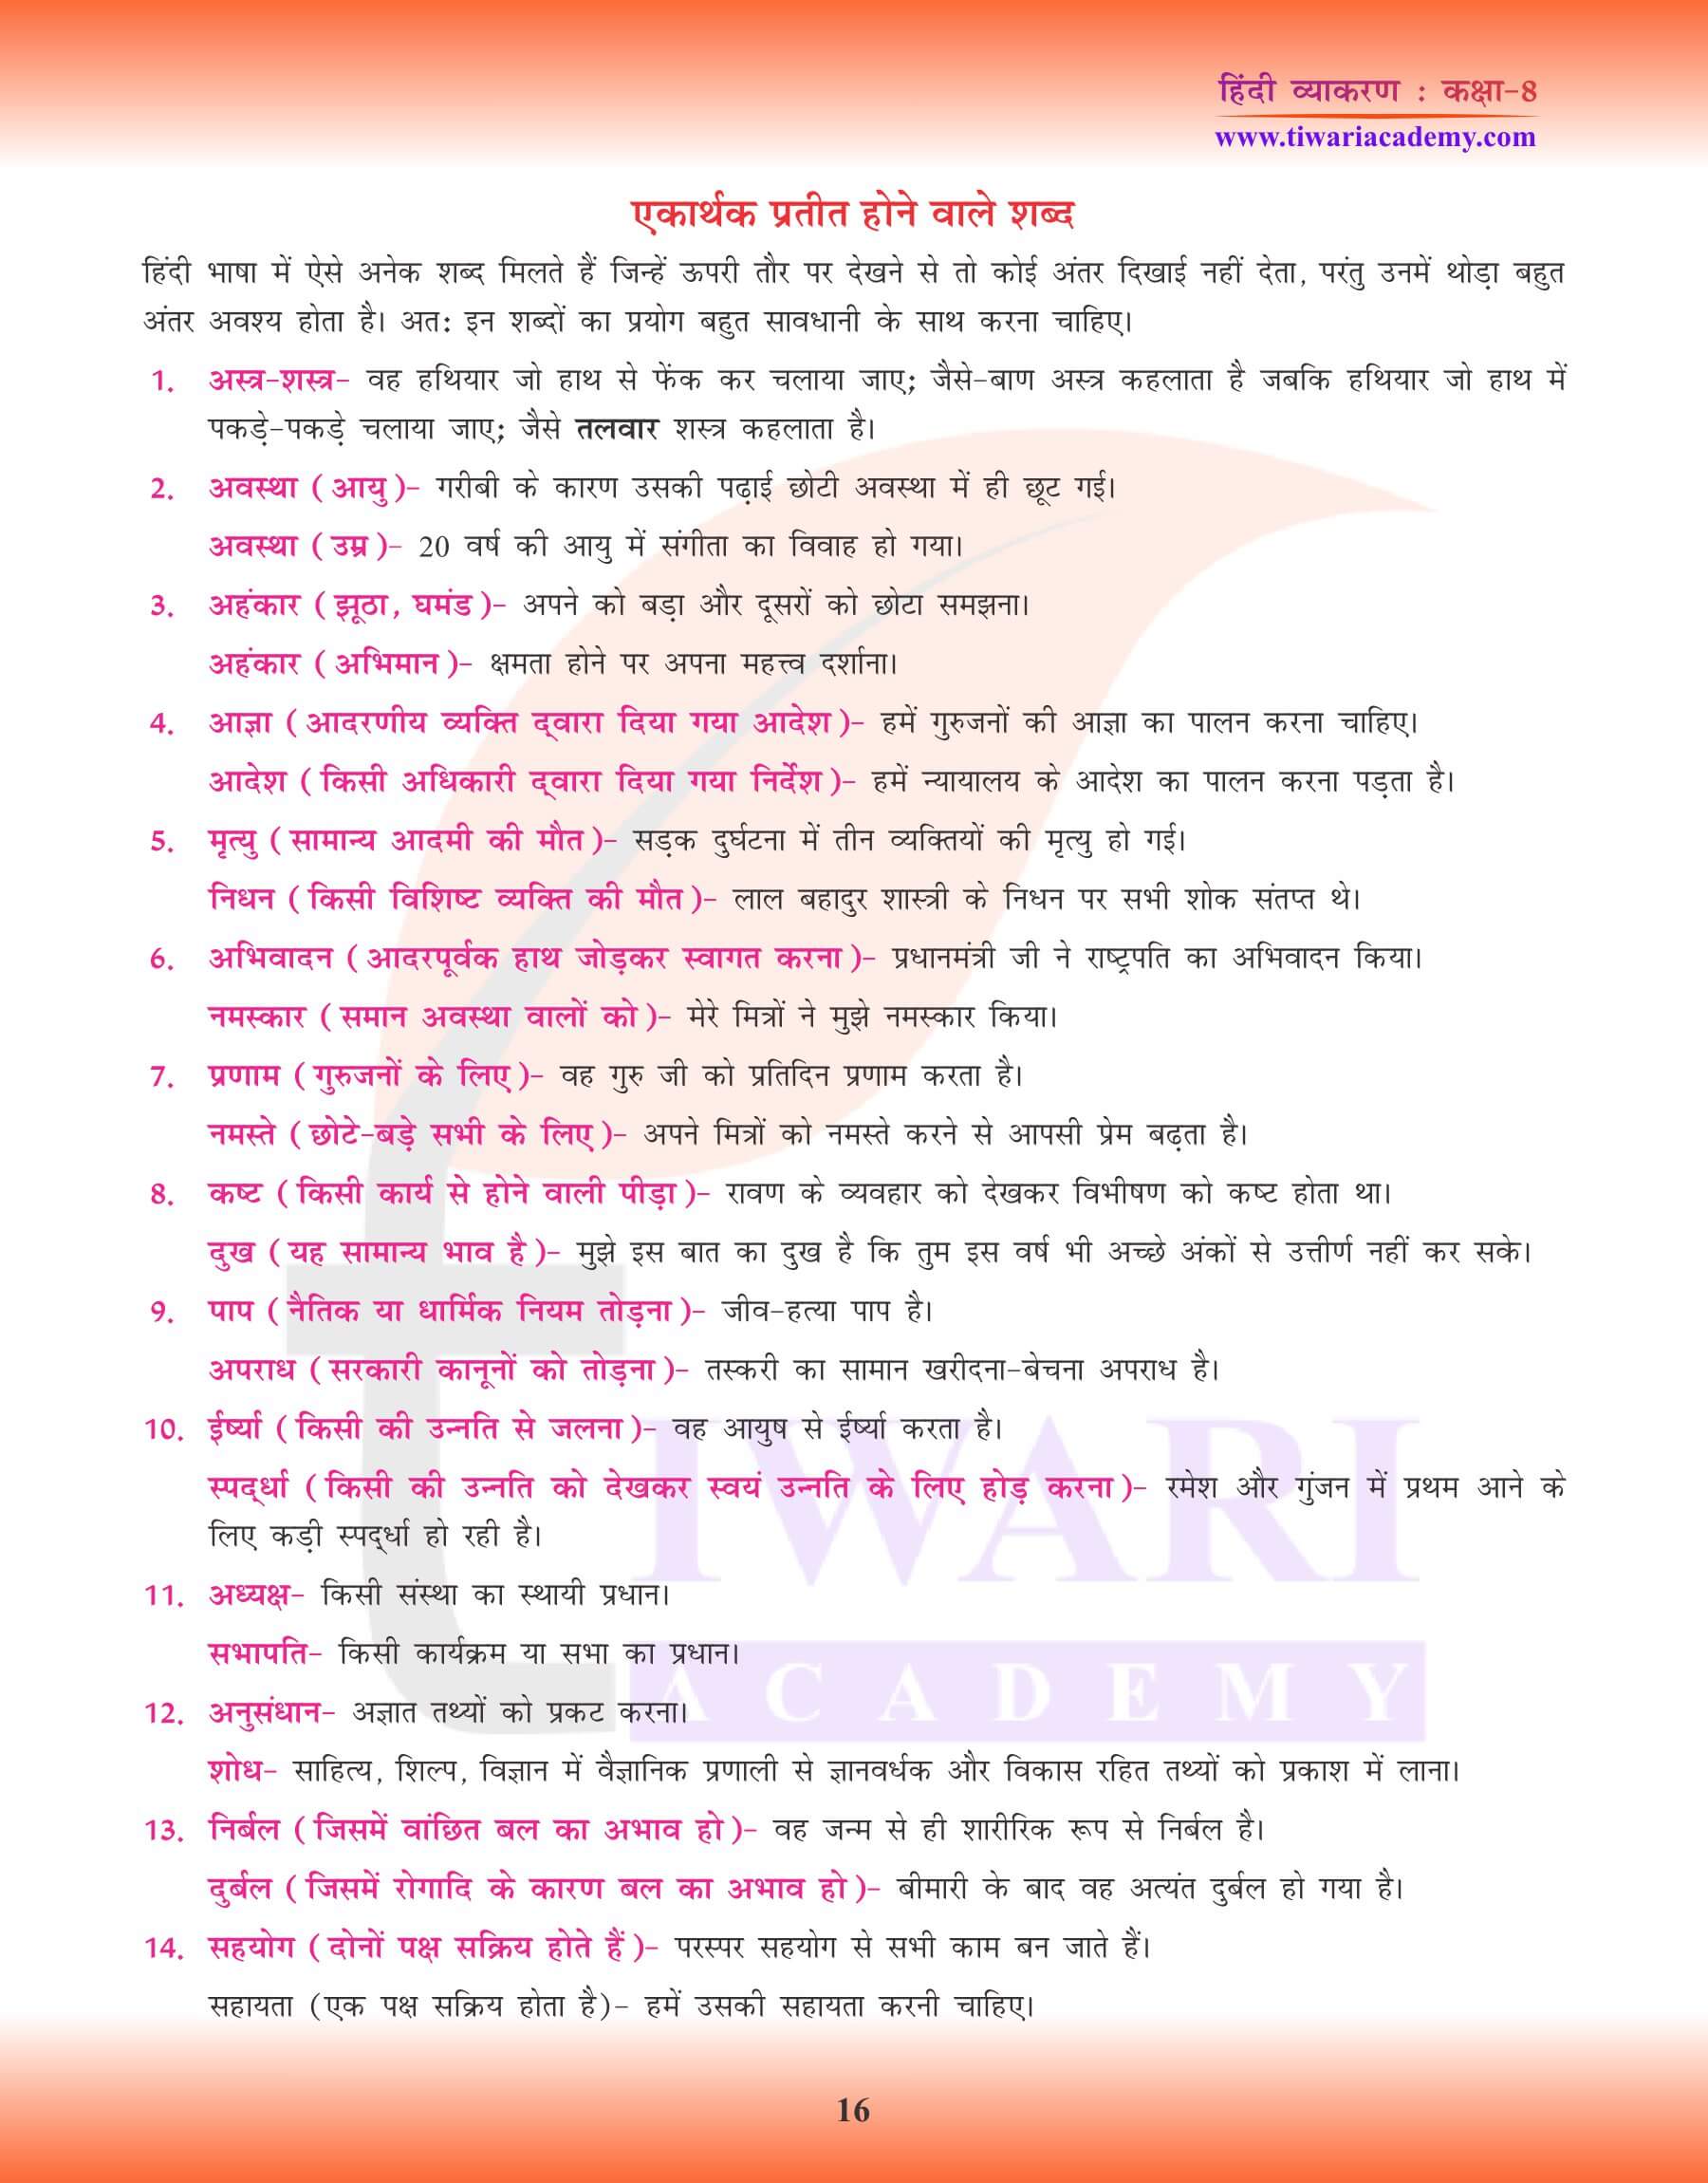 कक्षा 8 हिंदी व्याकरण में भिन्नार्थक शब्द